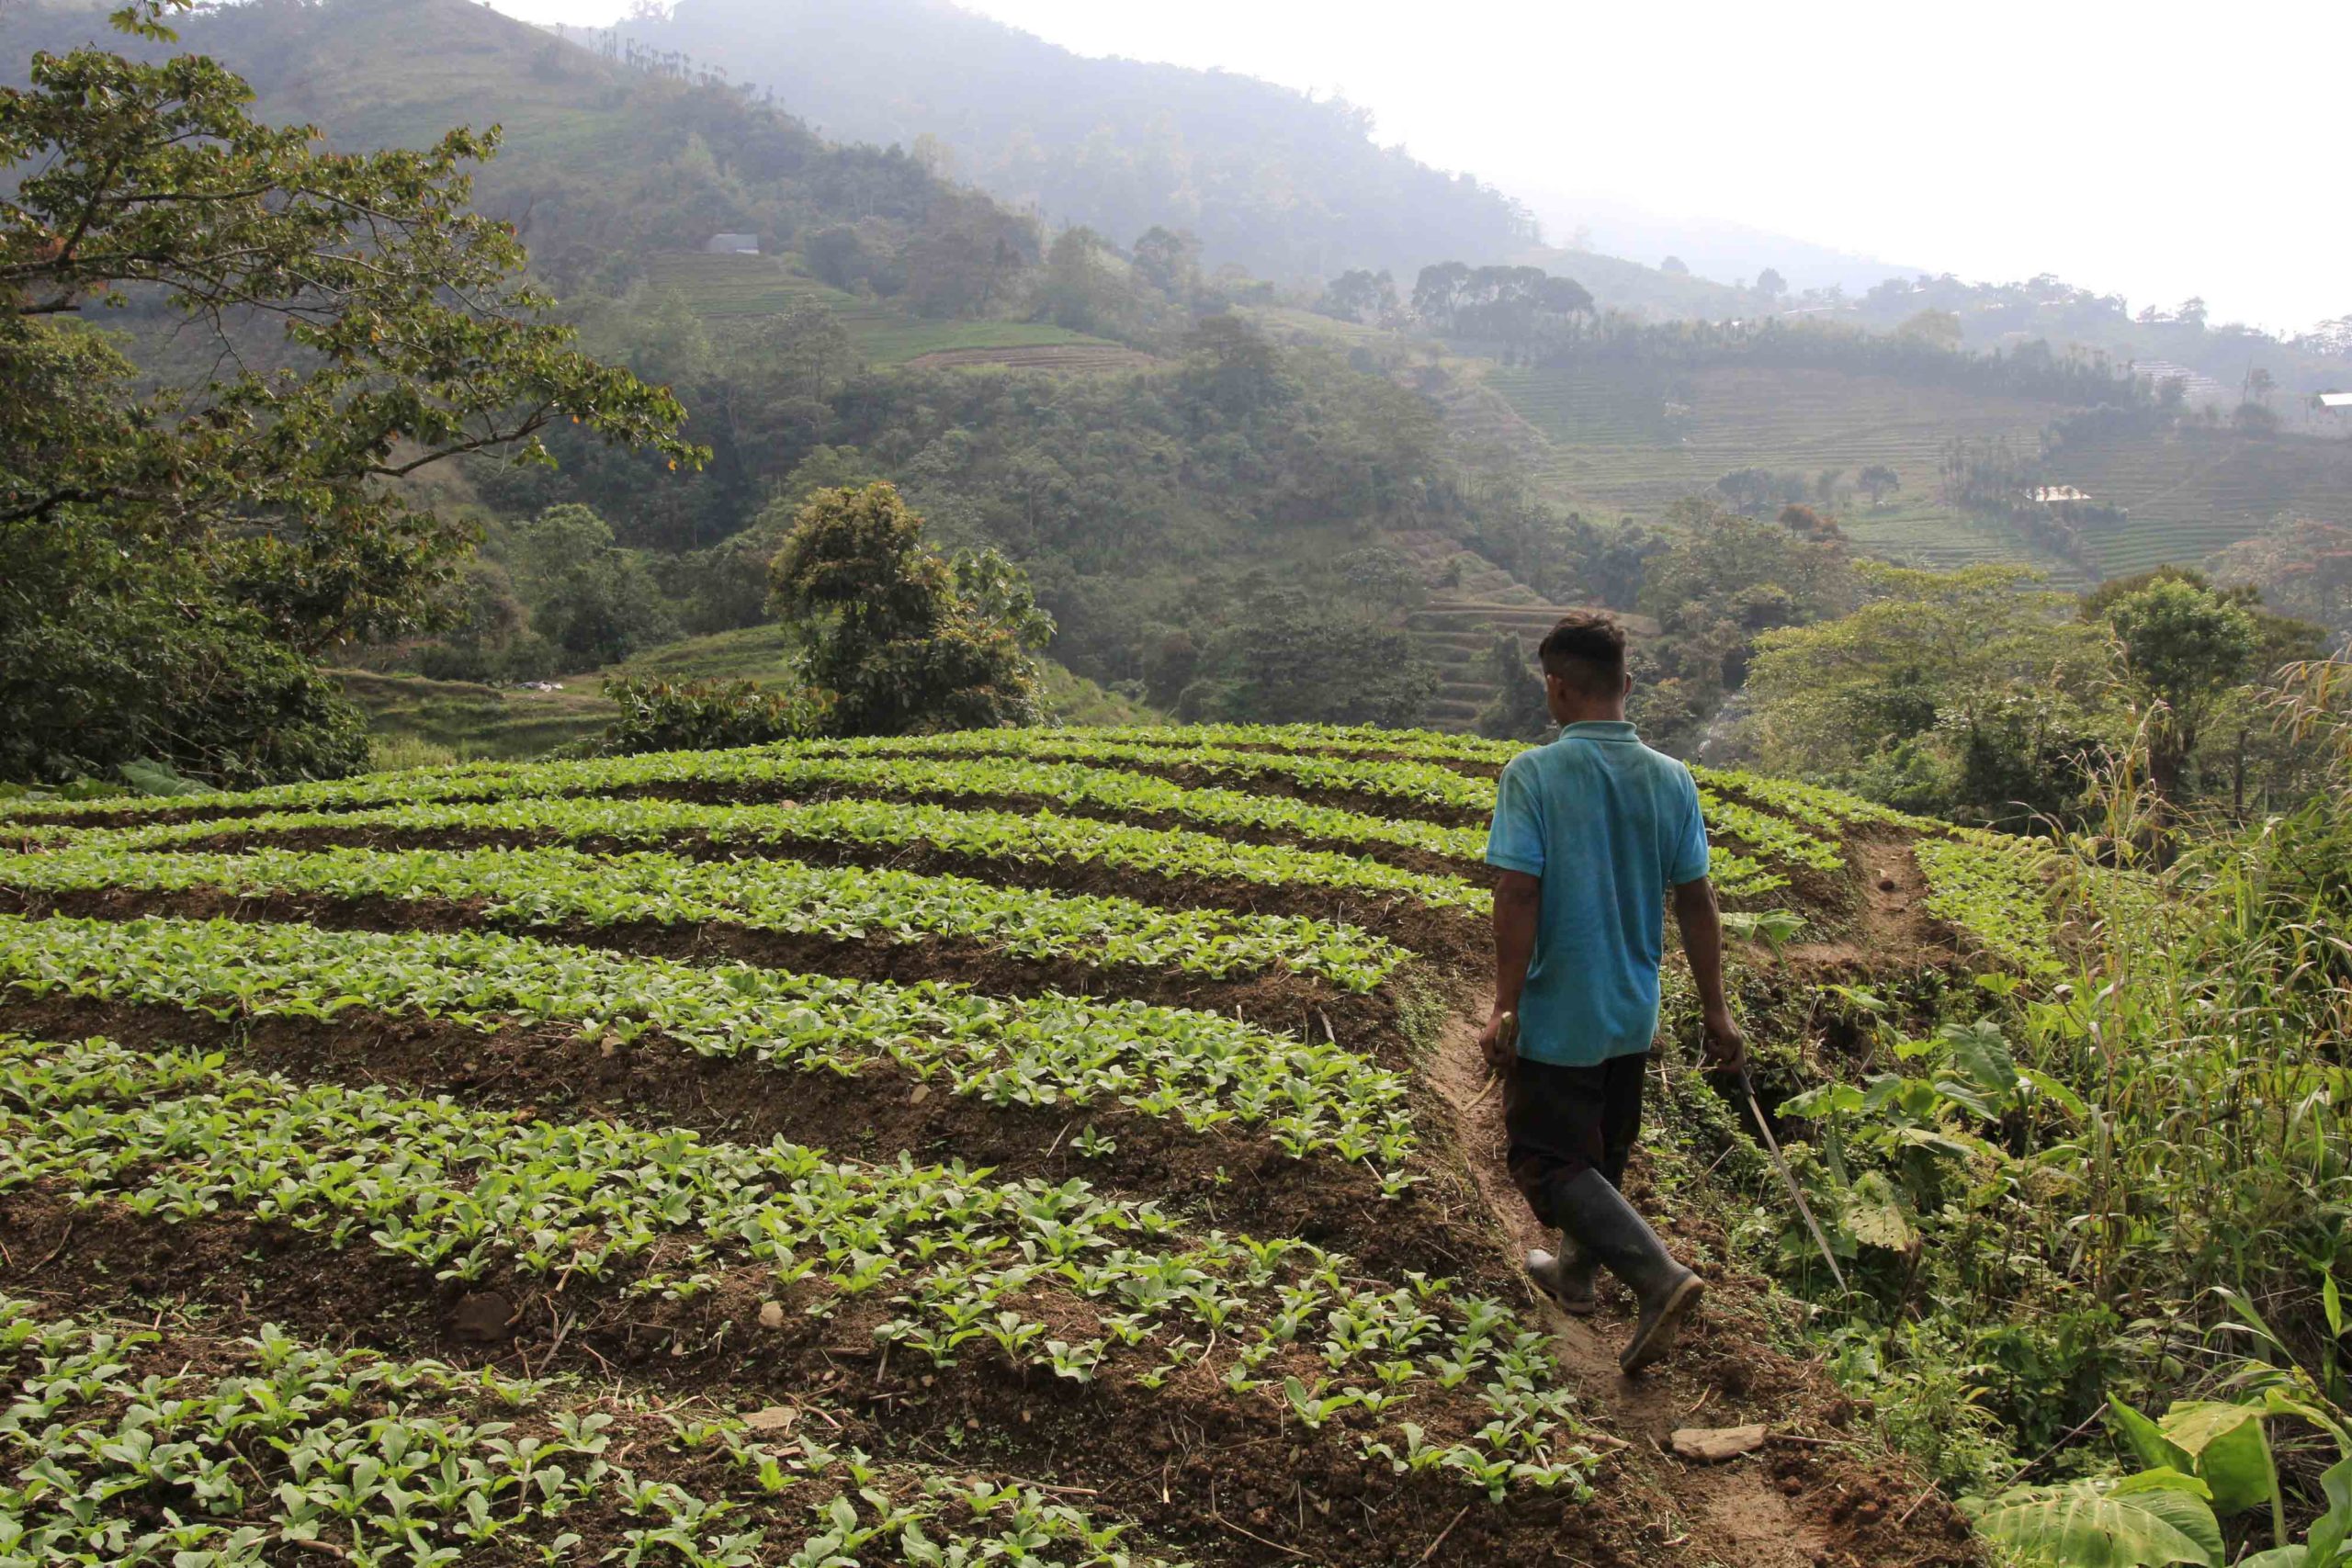 La cosecha de hortalizas es otra de las actividades fuertes en la zona de El Merendón, aunque a diferencia de la producción de café, las hortalizas se producen en menos tiempo y se siembra a campo abierto Foto CC/Amílcar Izaguirre